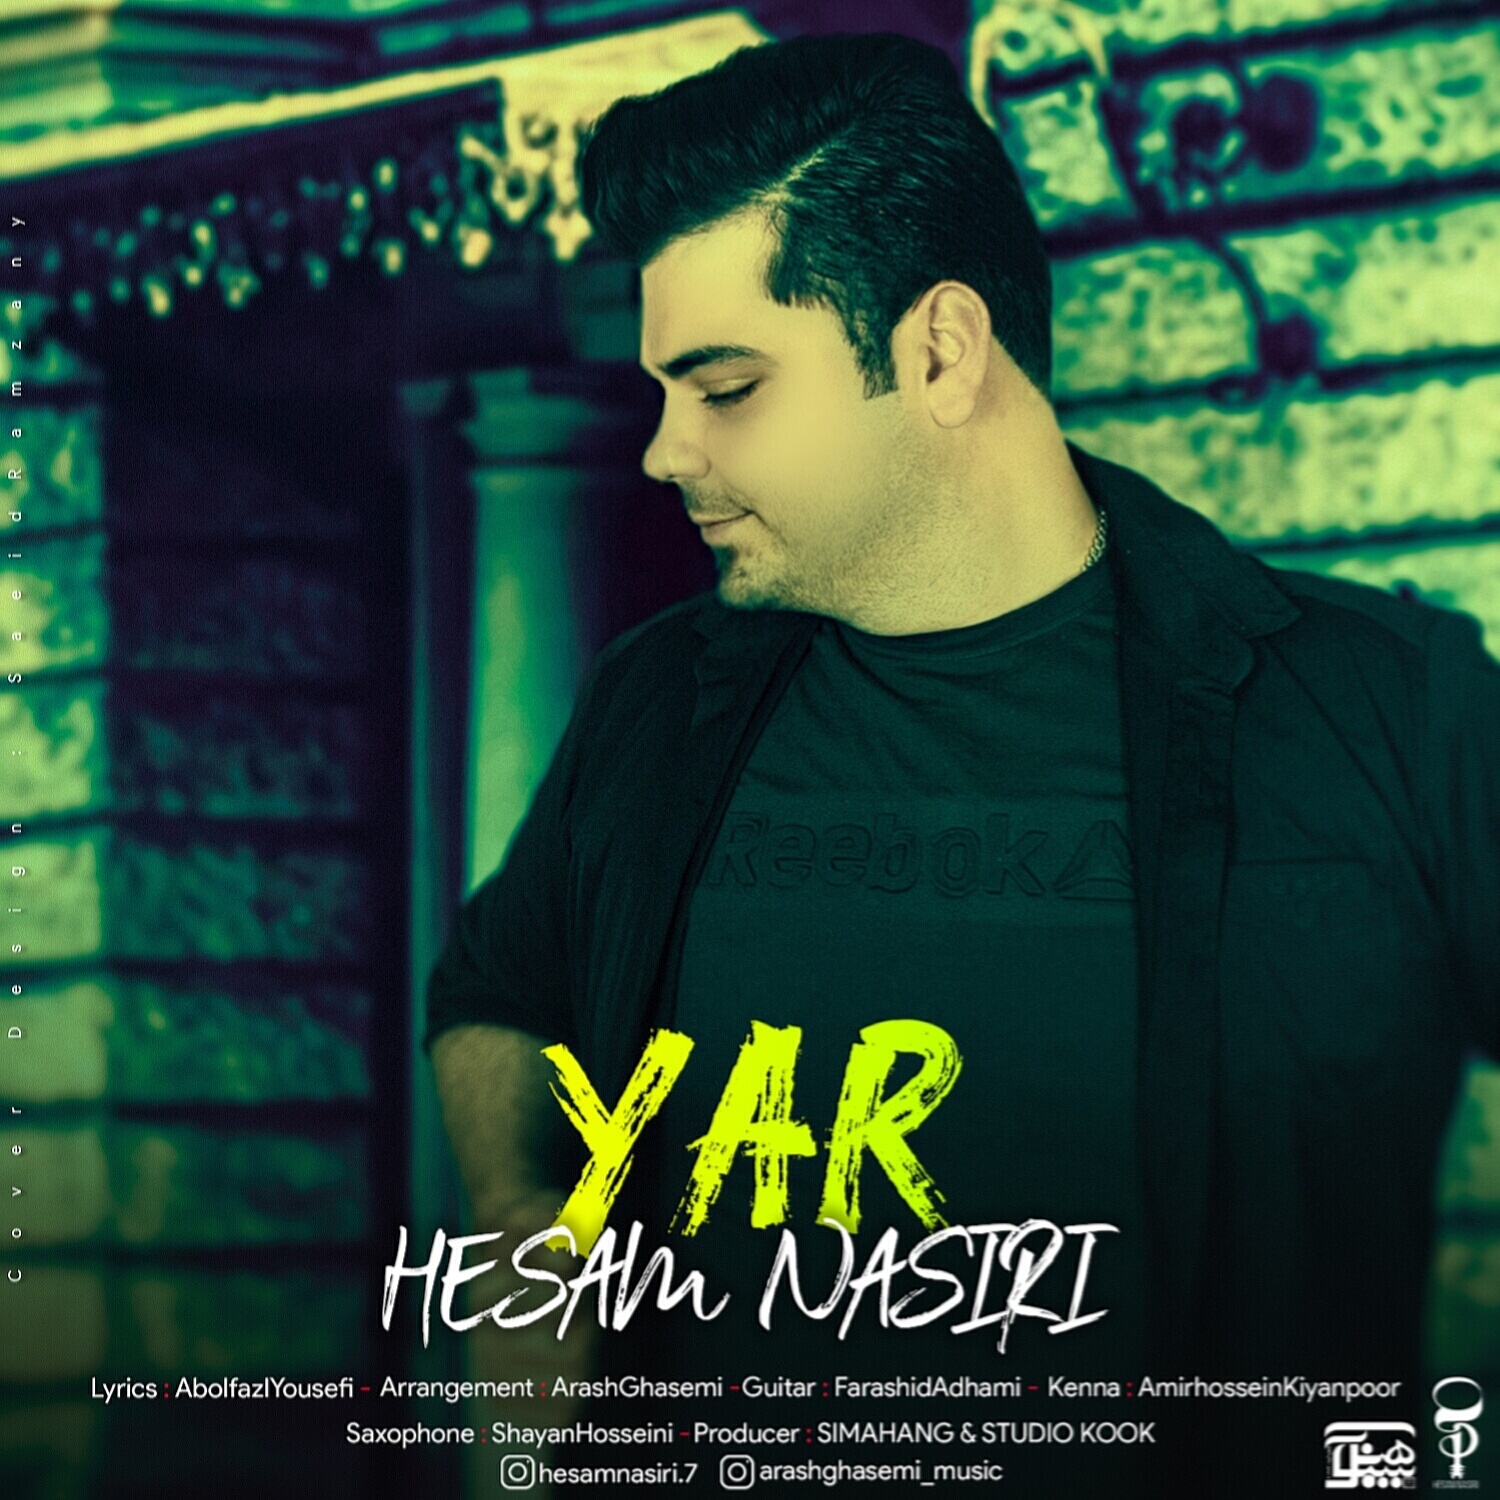  دانلود آهنگ جدید حسام نصیری - یار | Download New Music By Hesam Nasiri - Yar